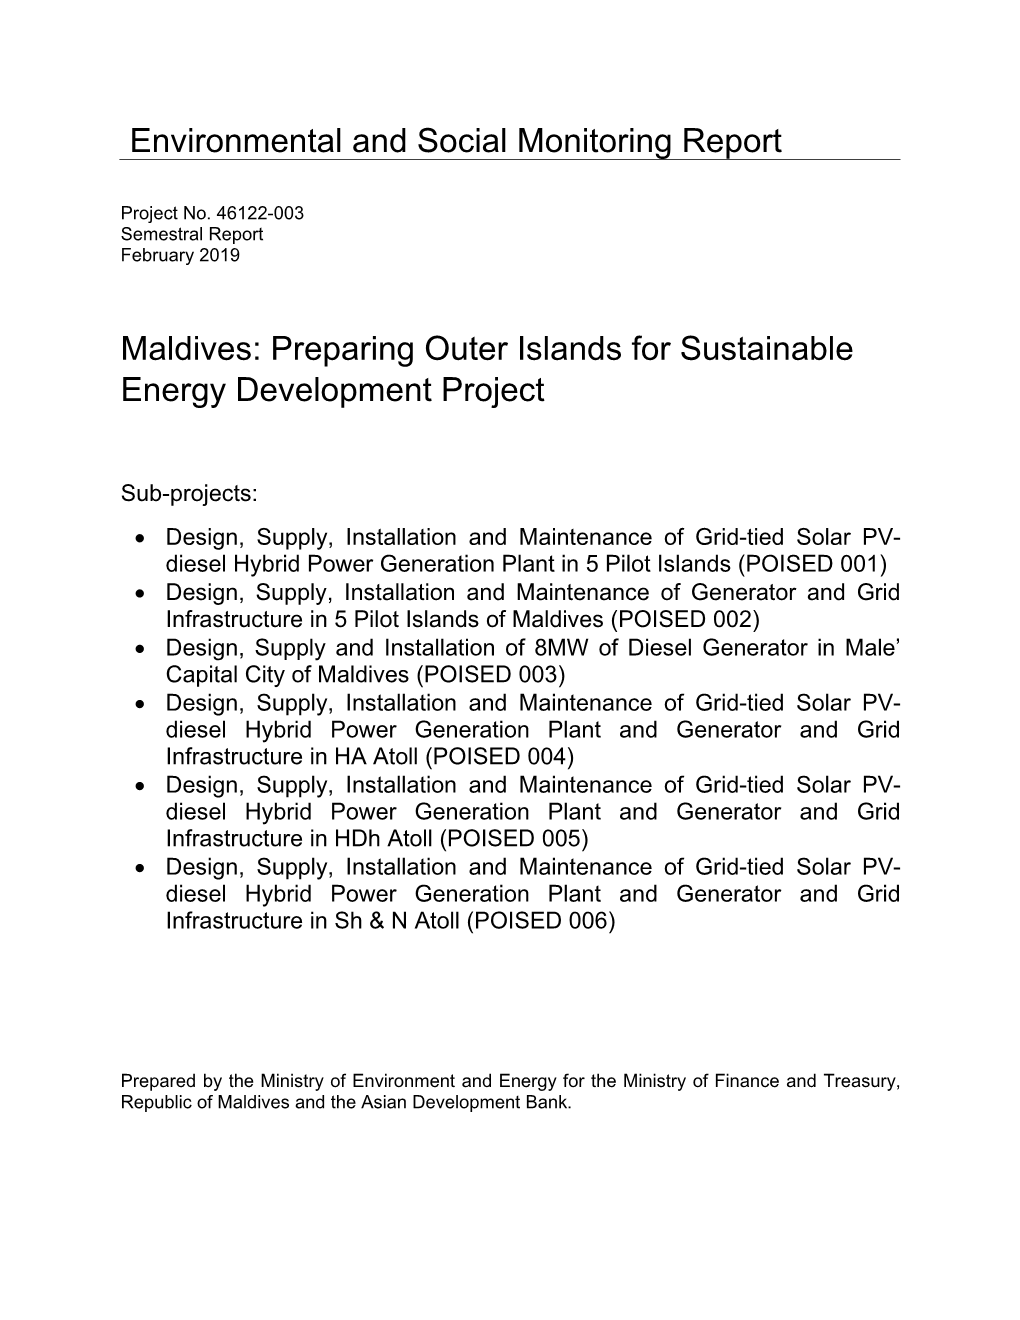 Environmental and Social Monitoring Report Maldives: Preparing Outer